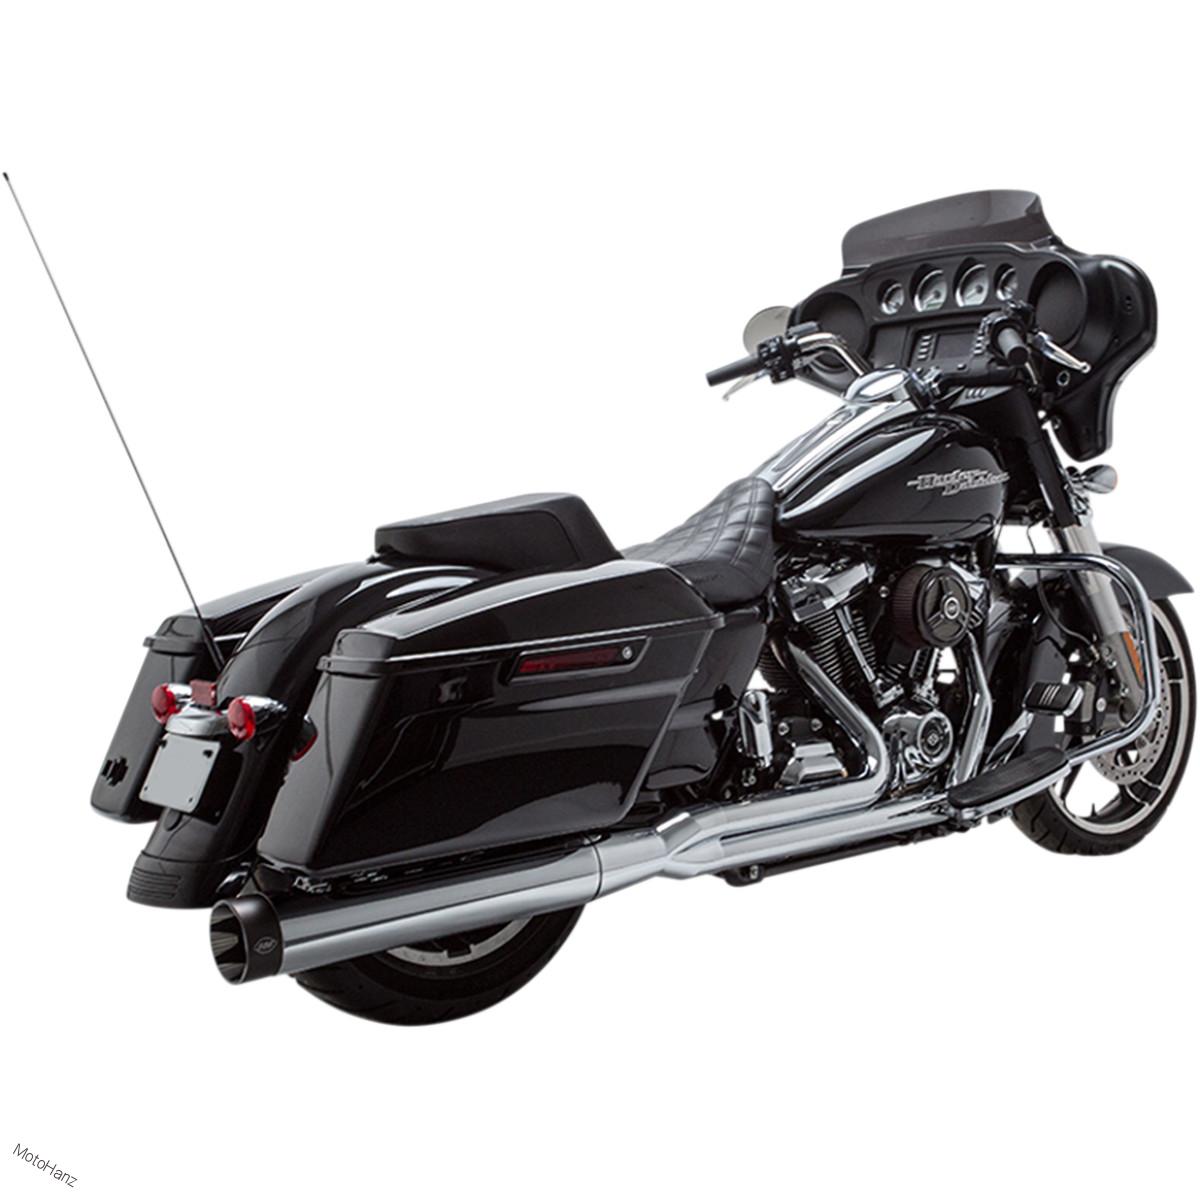 Výfuky S&S Sidewinder pro Harley Davidson Touring 17-19 - chromové